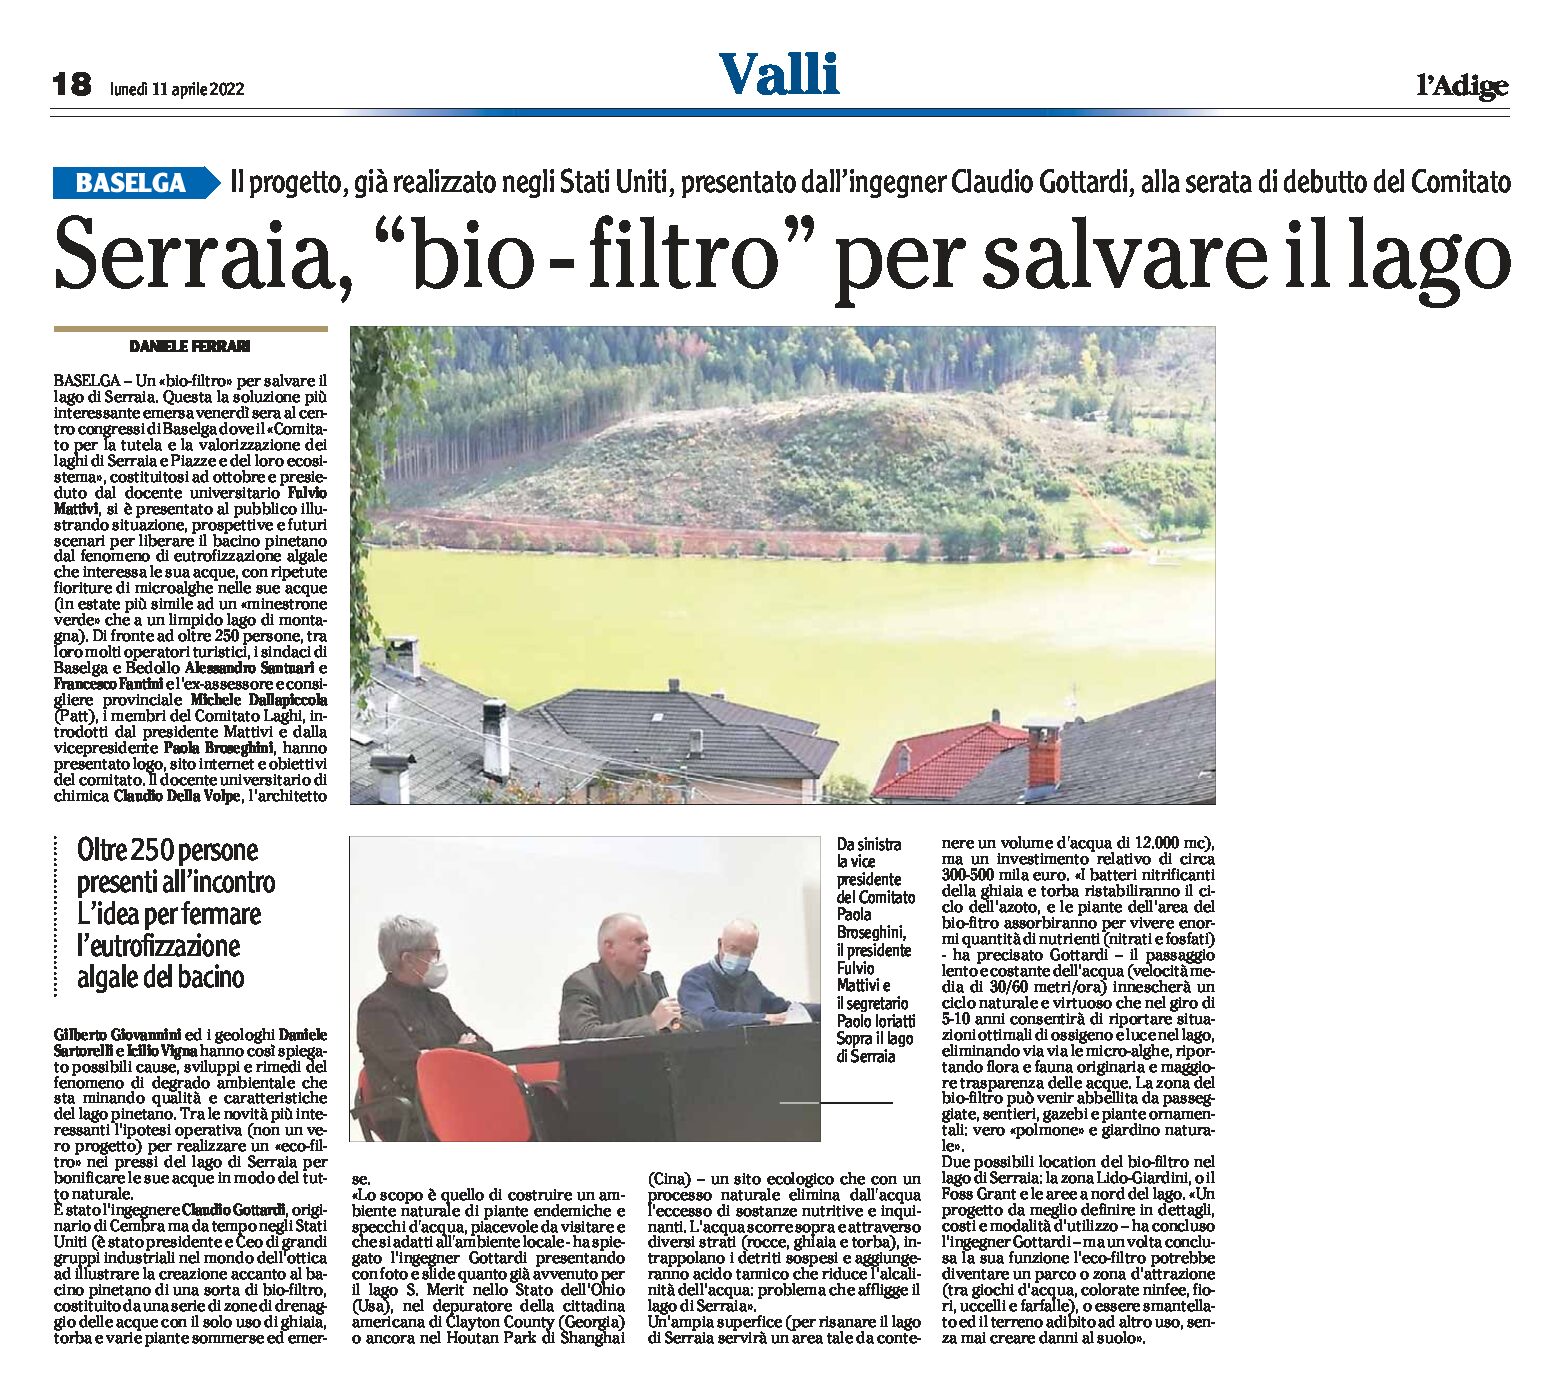 Baselga, Serraia: “bio-filtro” per salvare il lago